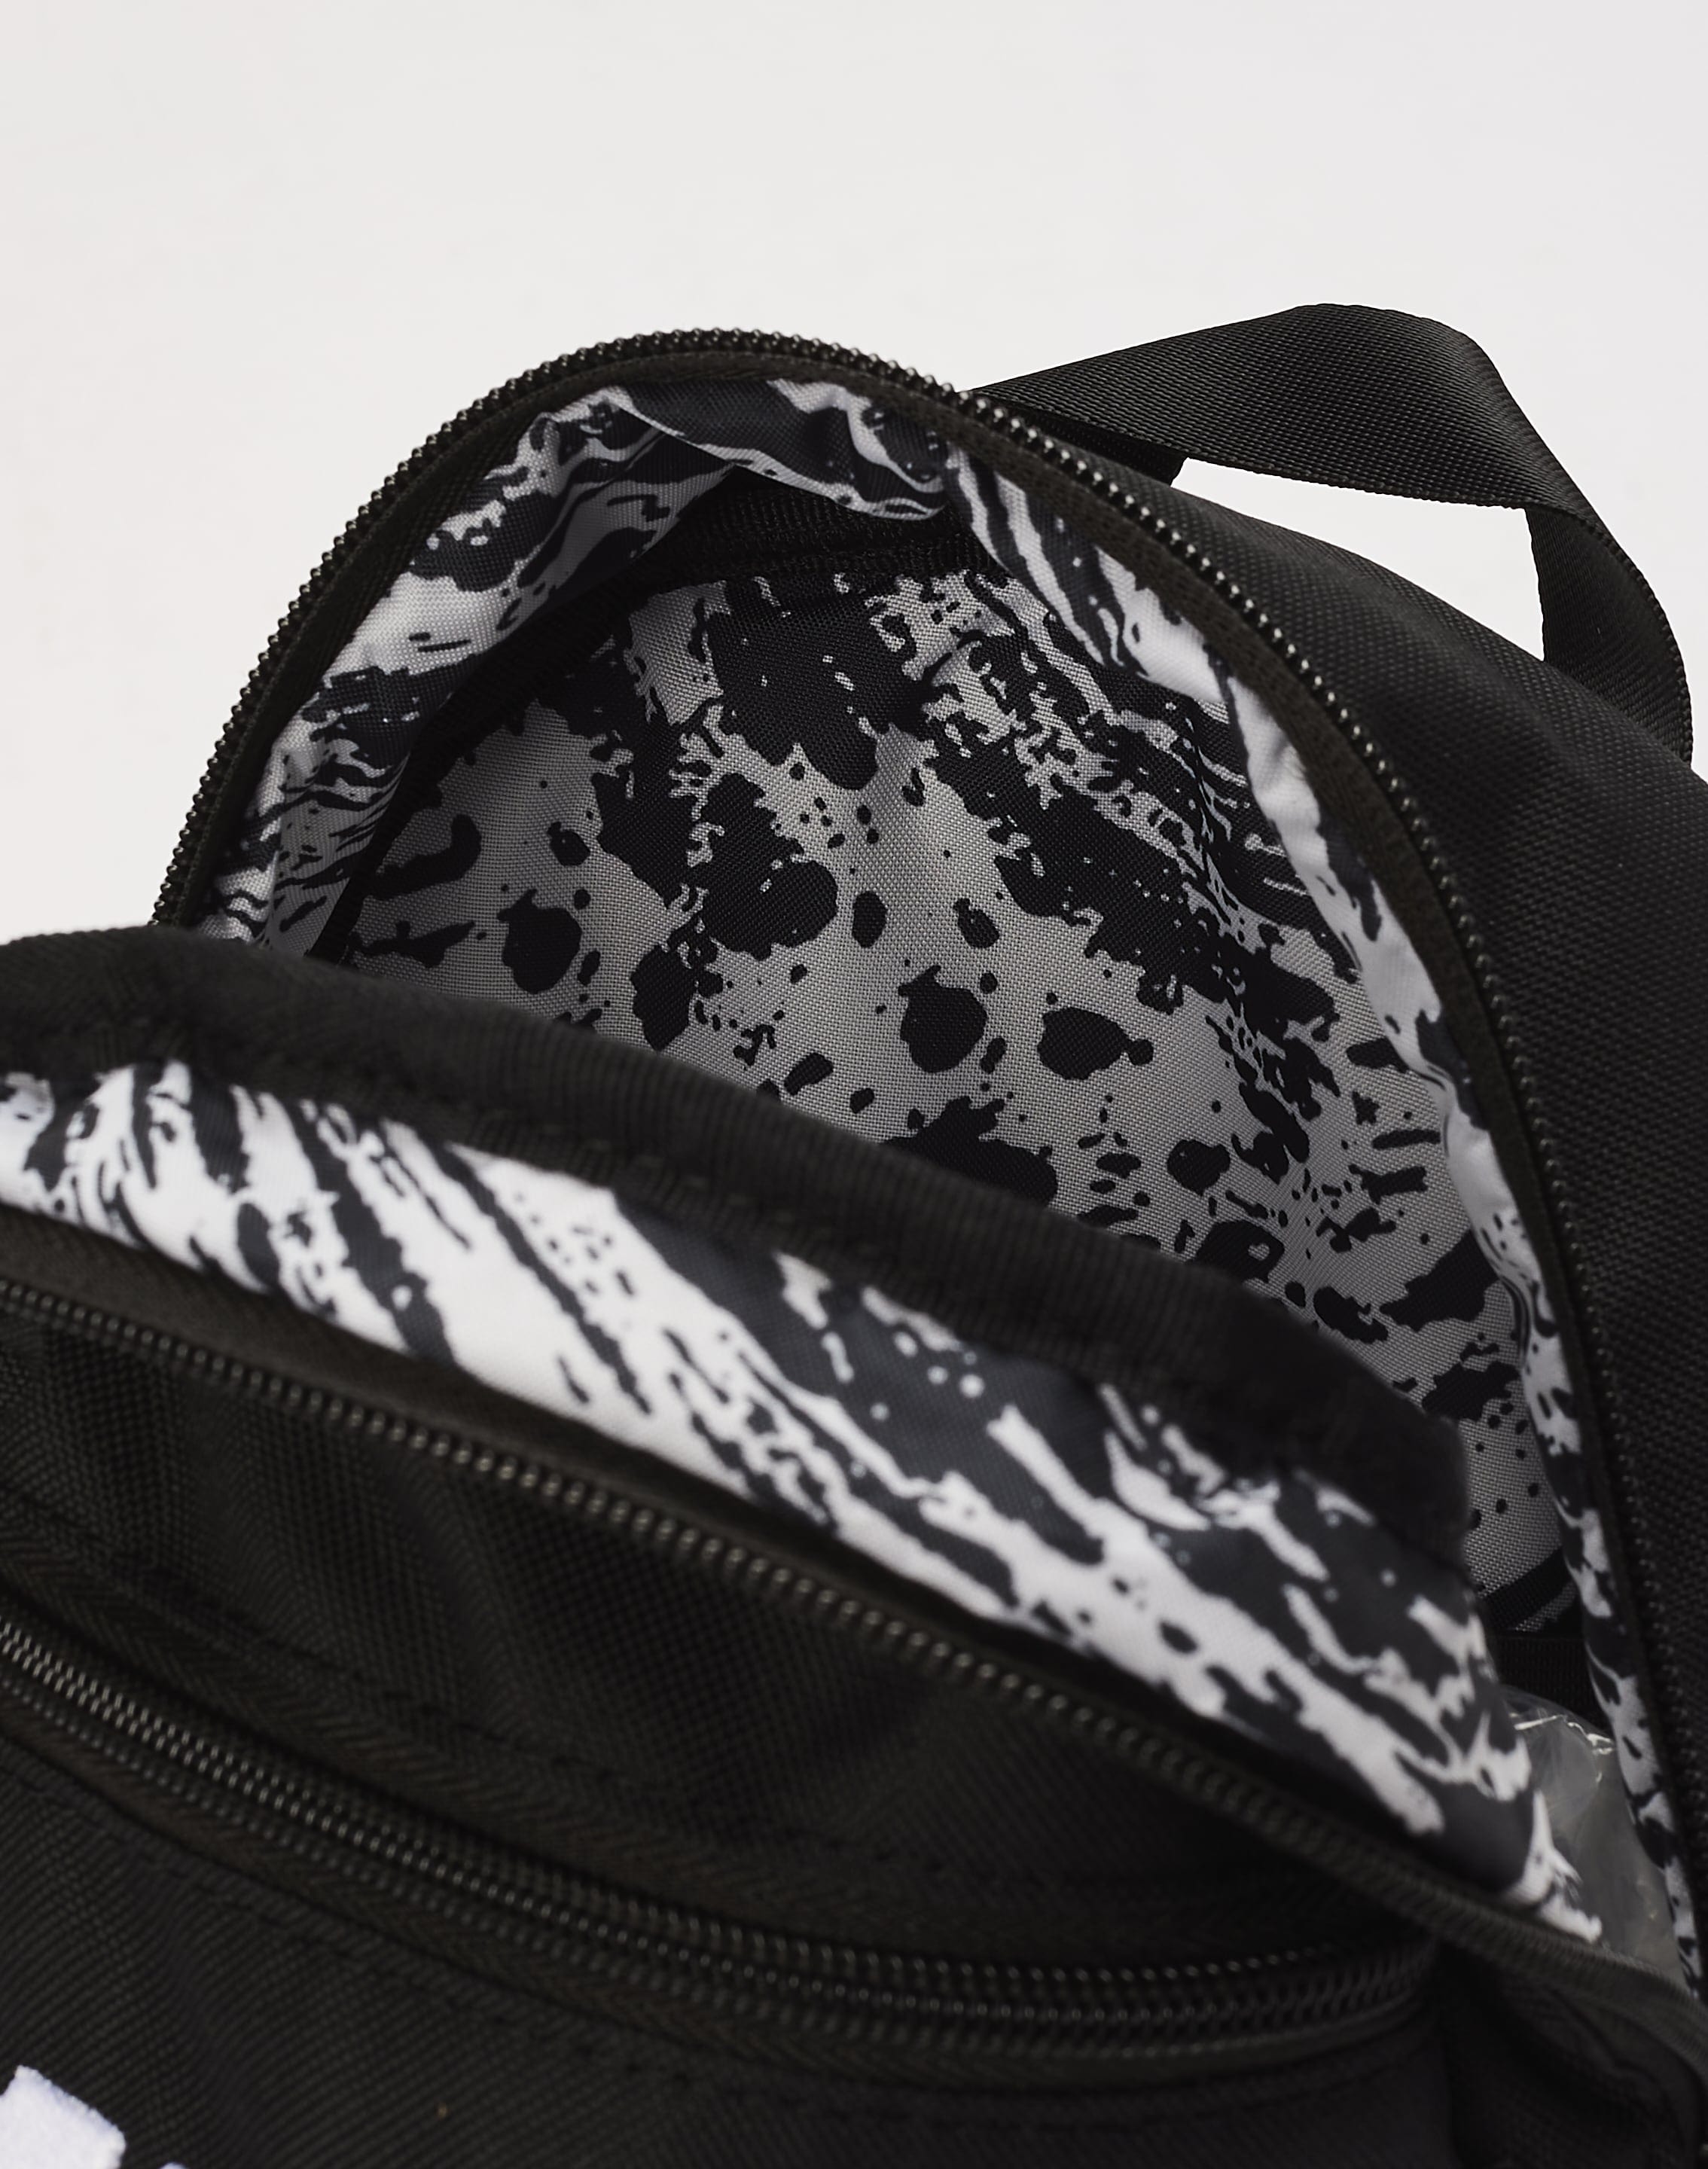 Nike Futura mini backpack in black